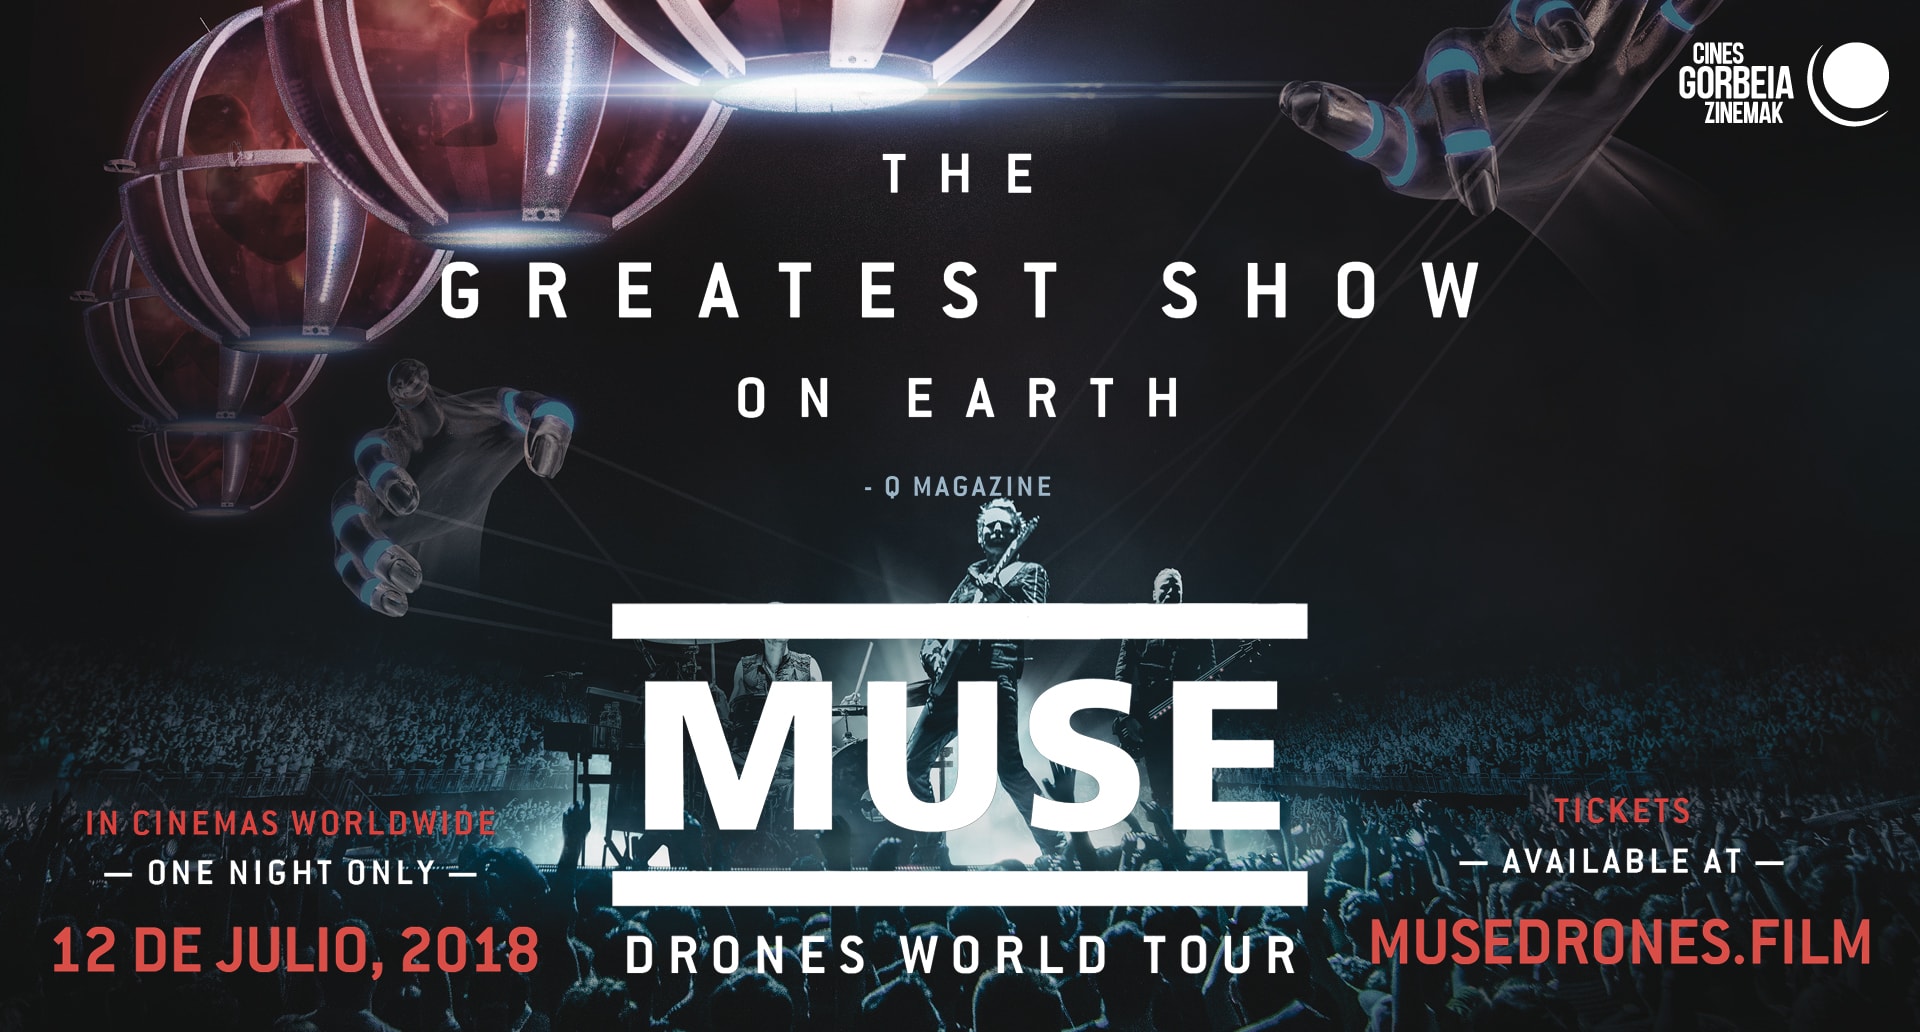 Muse taldeak ‘Drones World Tour’ bira plazaratu du, nazioarteko zinematan ikusgai.